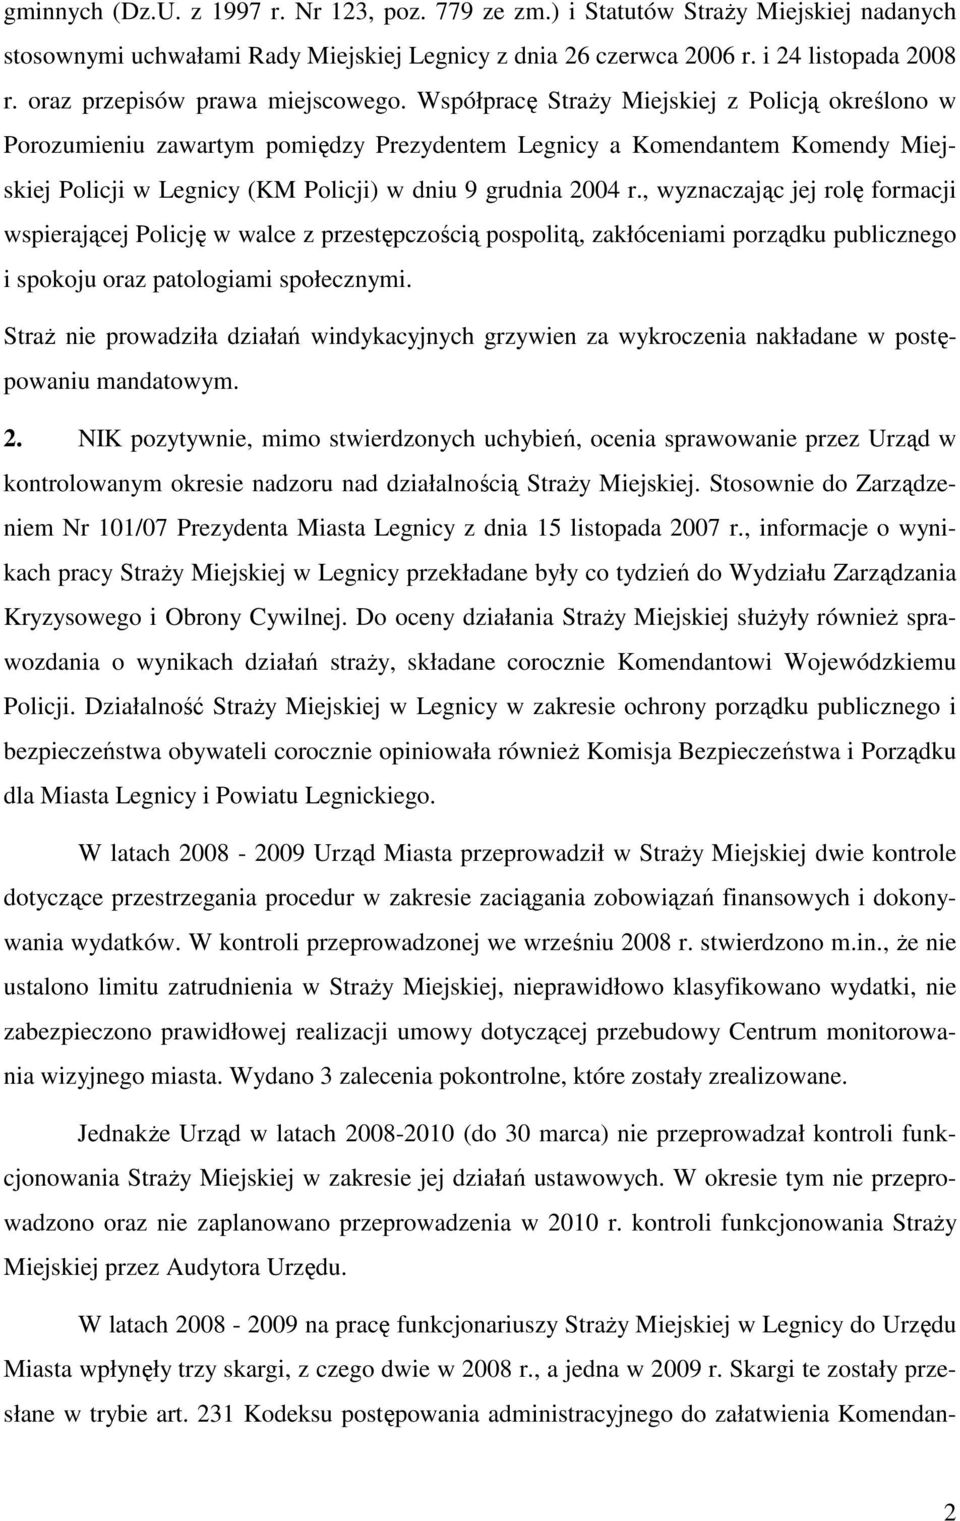 Współpracę Straży Miejskiej z Policją określono w Porozumieniu zawartym pomiędzy Prezydentem Legnicy a Komendantem Komendy Miejskiej Policji w Legnicy (KM Policji) w dniu 9 grudnia 2004 r.